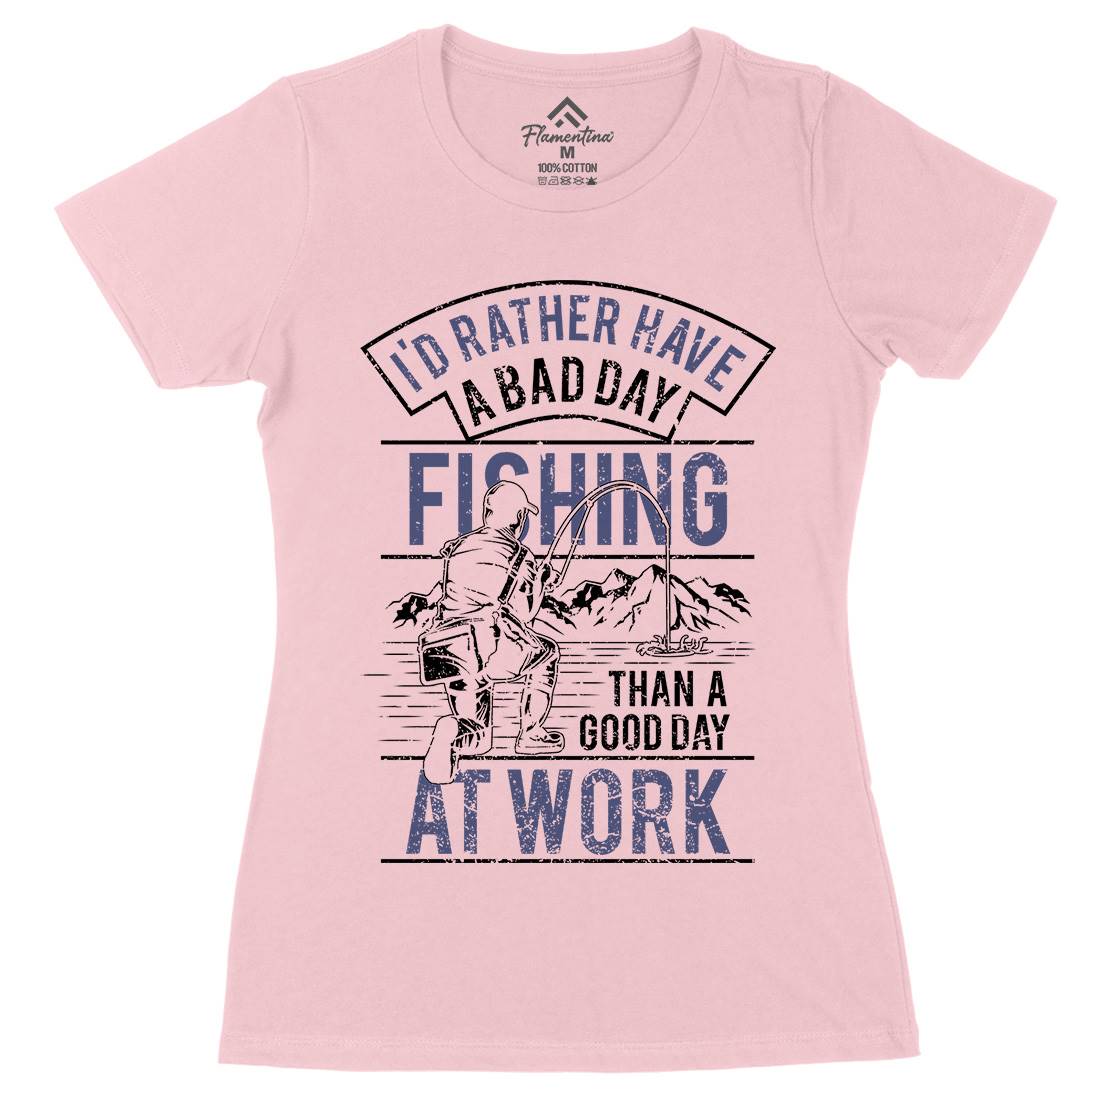 Gear Womens Organic Crew Neck T-Shirt Fishing A660